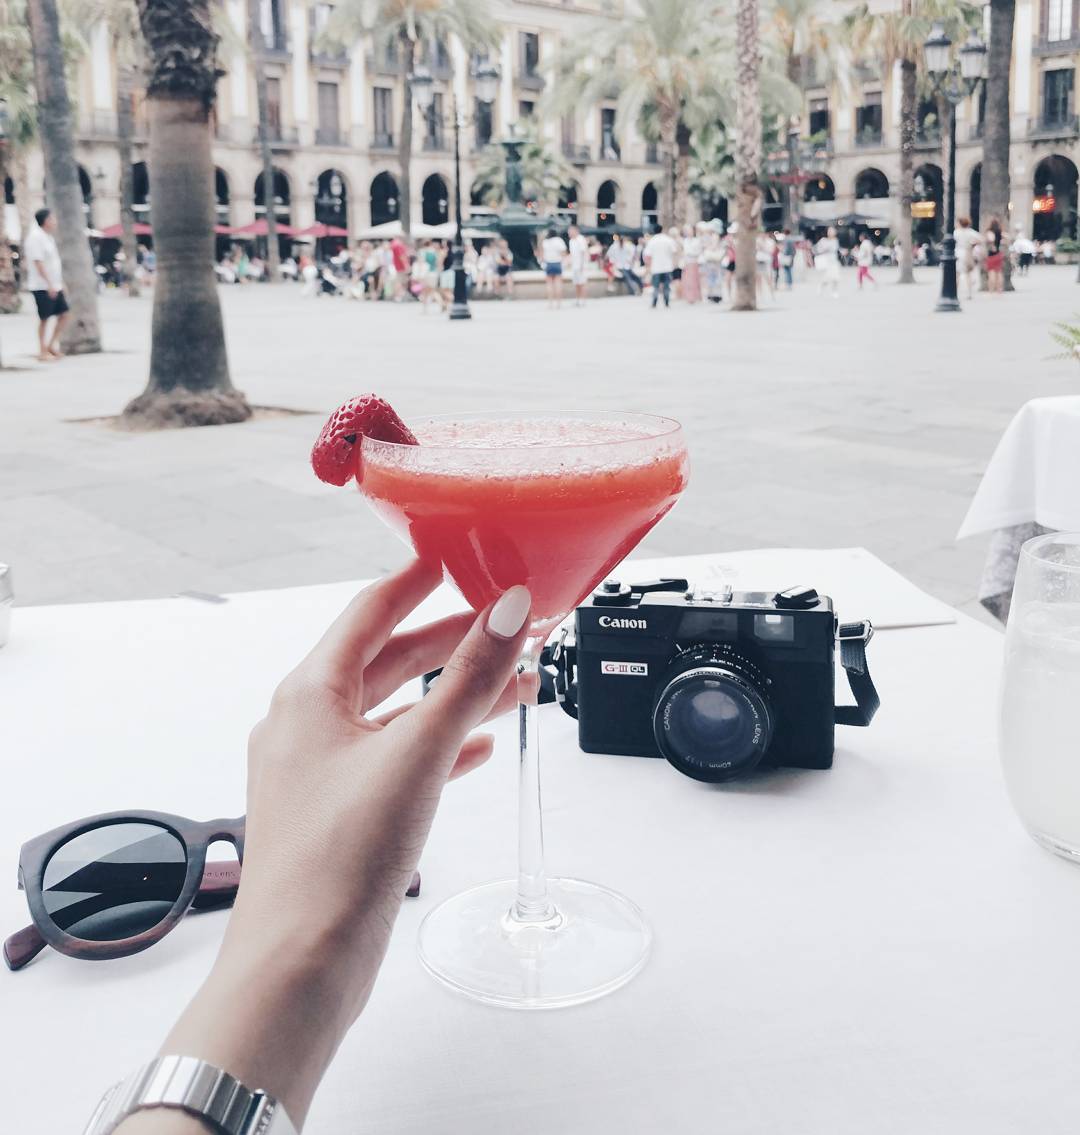 Bonnes adresses où manger à Barcelone - blog voyage lifestyle